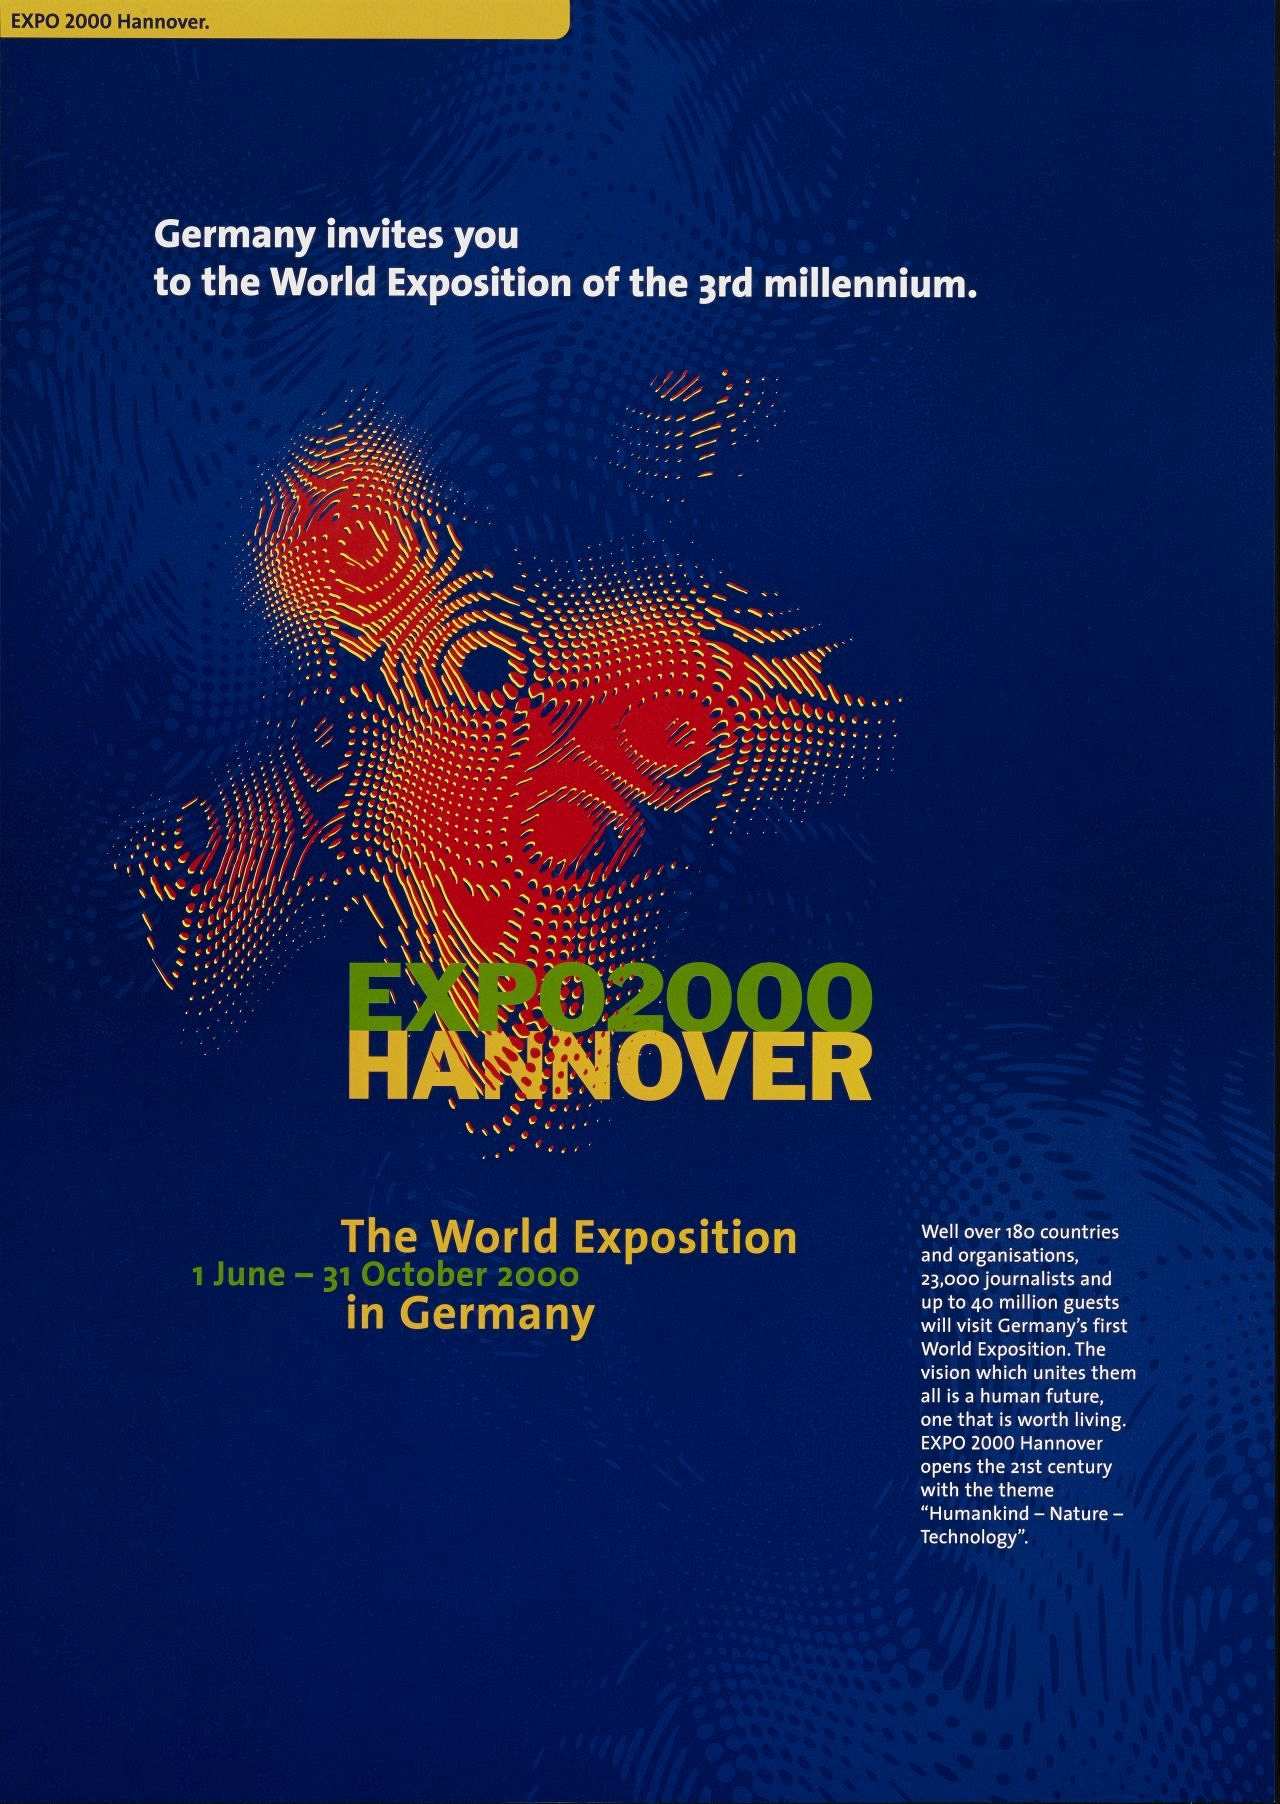 Blaugrundiges Plakat, im Zentrum rot-gelbes Expo-Logo, unten darüber geschrieben in grün-gelb ‚Expo2000 Hannover‘; oberhalb  und unterhalb weitere Informationen zur Ausstellung.